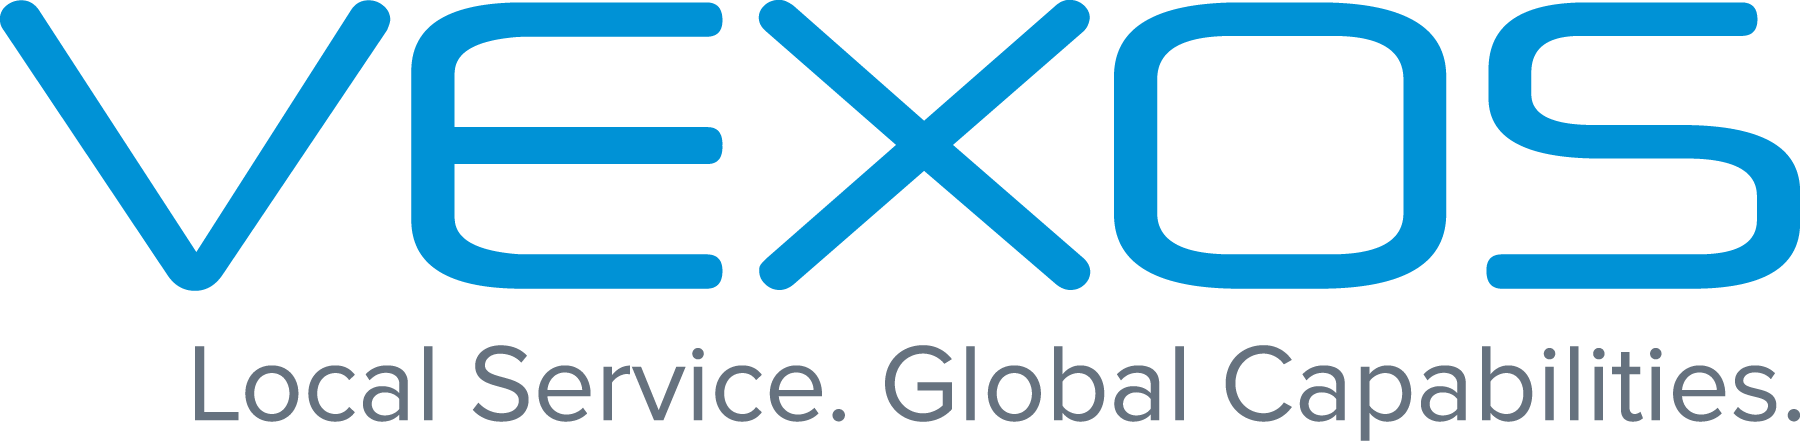 Vexos Electronic Manufacturing - USA